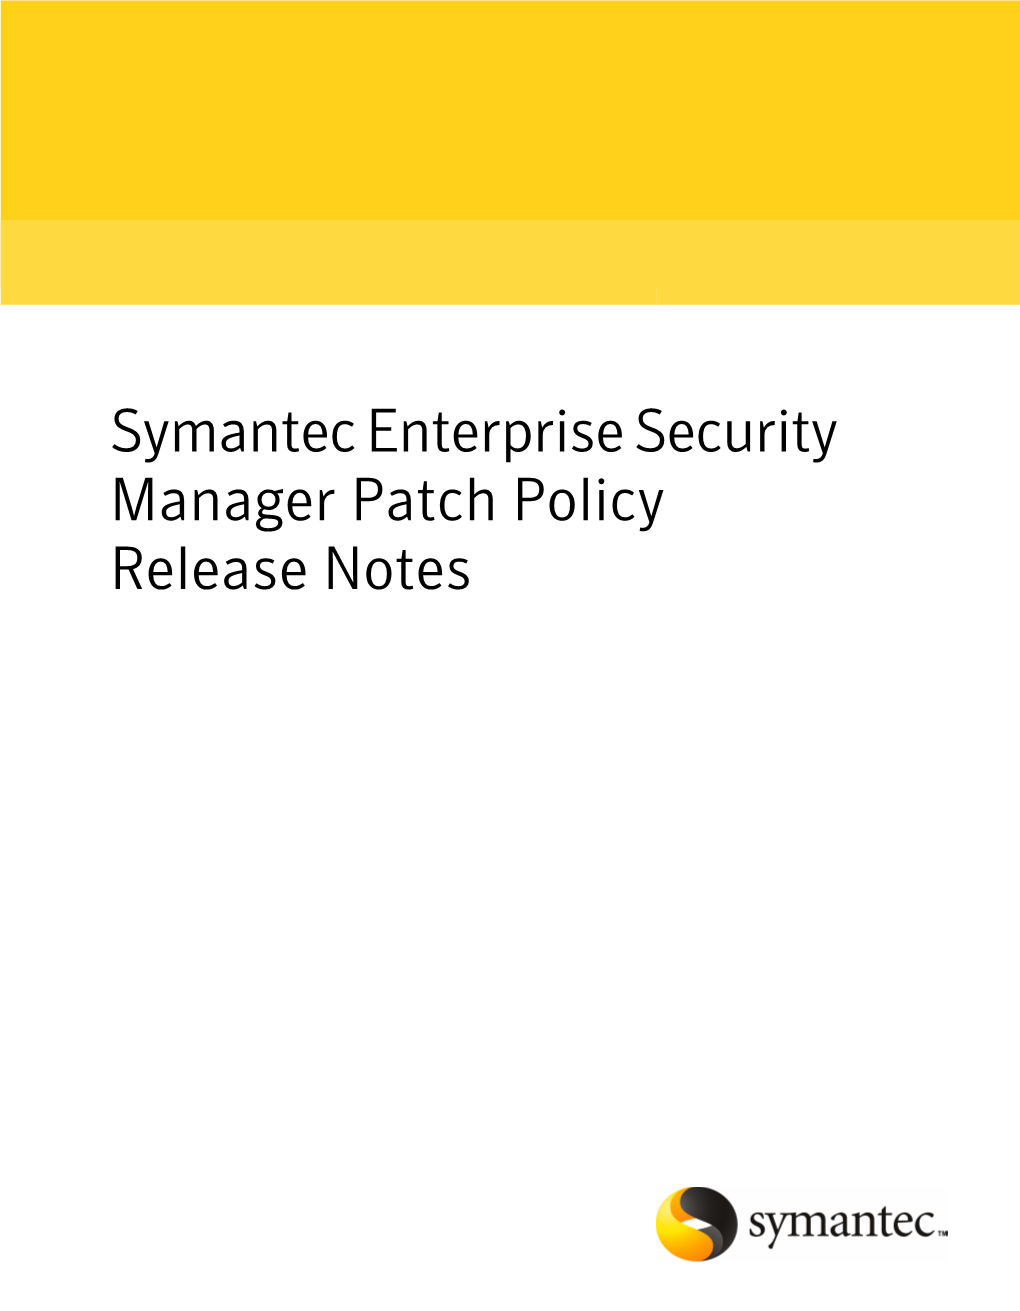 Symantec Enterprise Security Manager Patch Policy Release Notes Symantec Enterprise Security Manager Patch Policy Release Notes